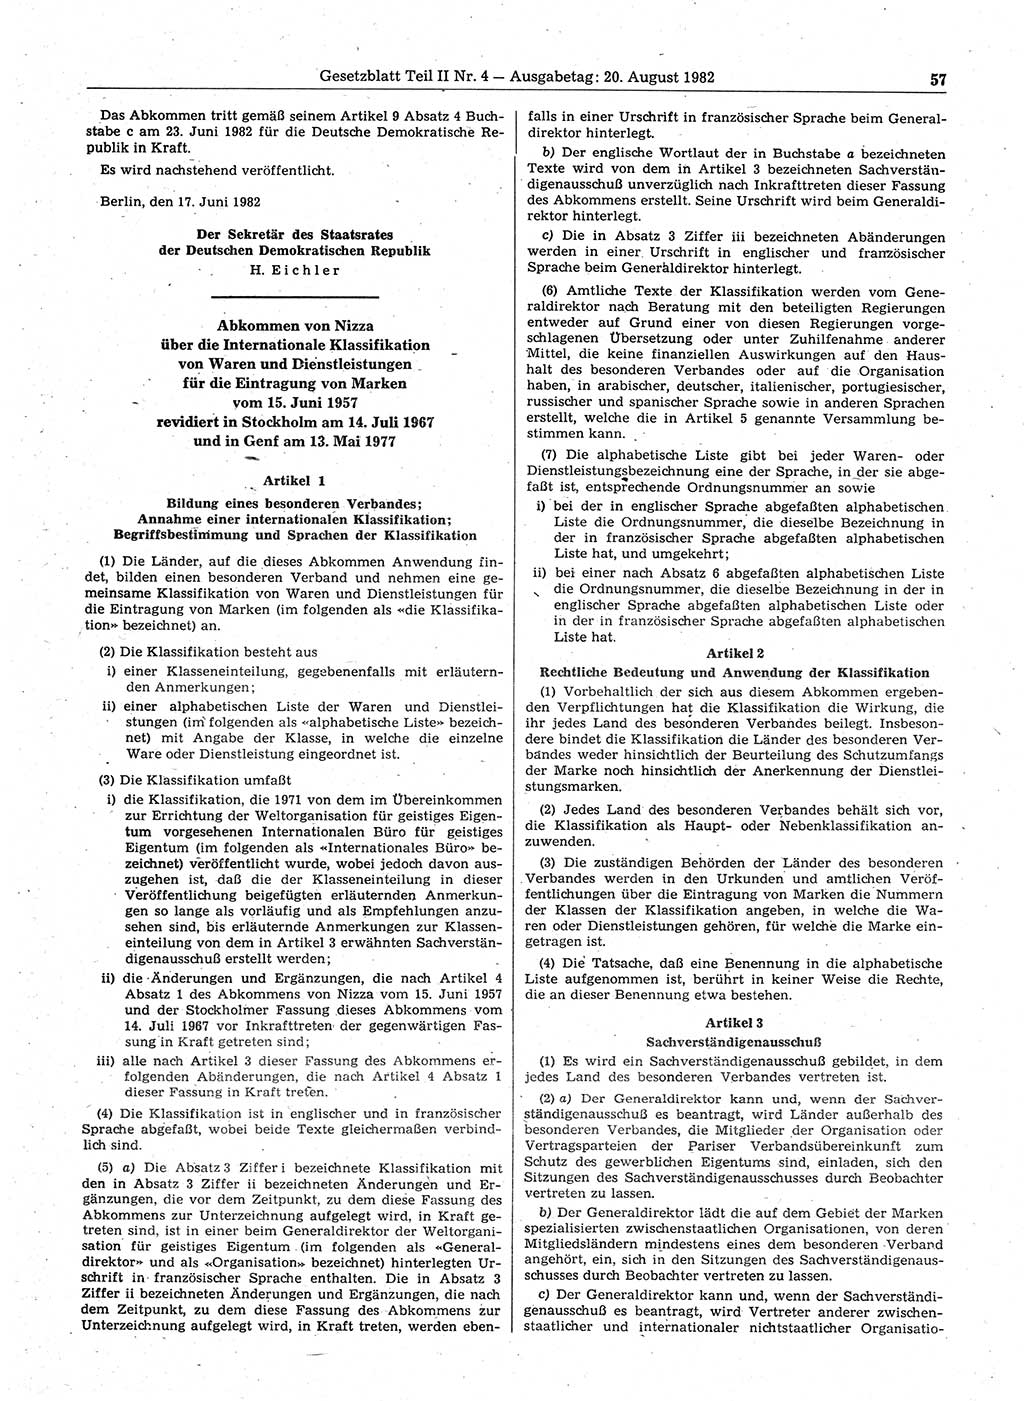 Gesetzblatt (GBl.) der Deutschen Demokratischen Republik (DDR) Teil ⅠⅠ 1982, Seite 57 (GBl. DDR ⅠⅠ 1982, S. 57)